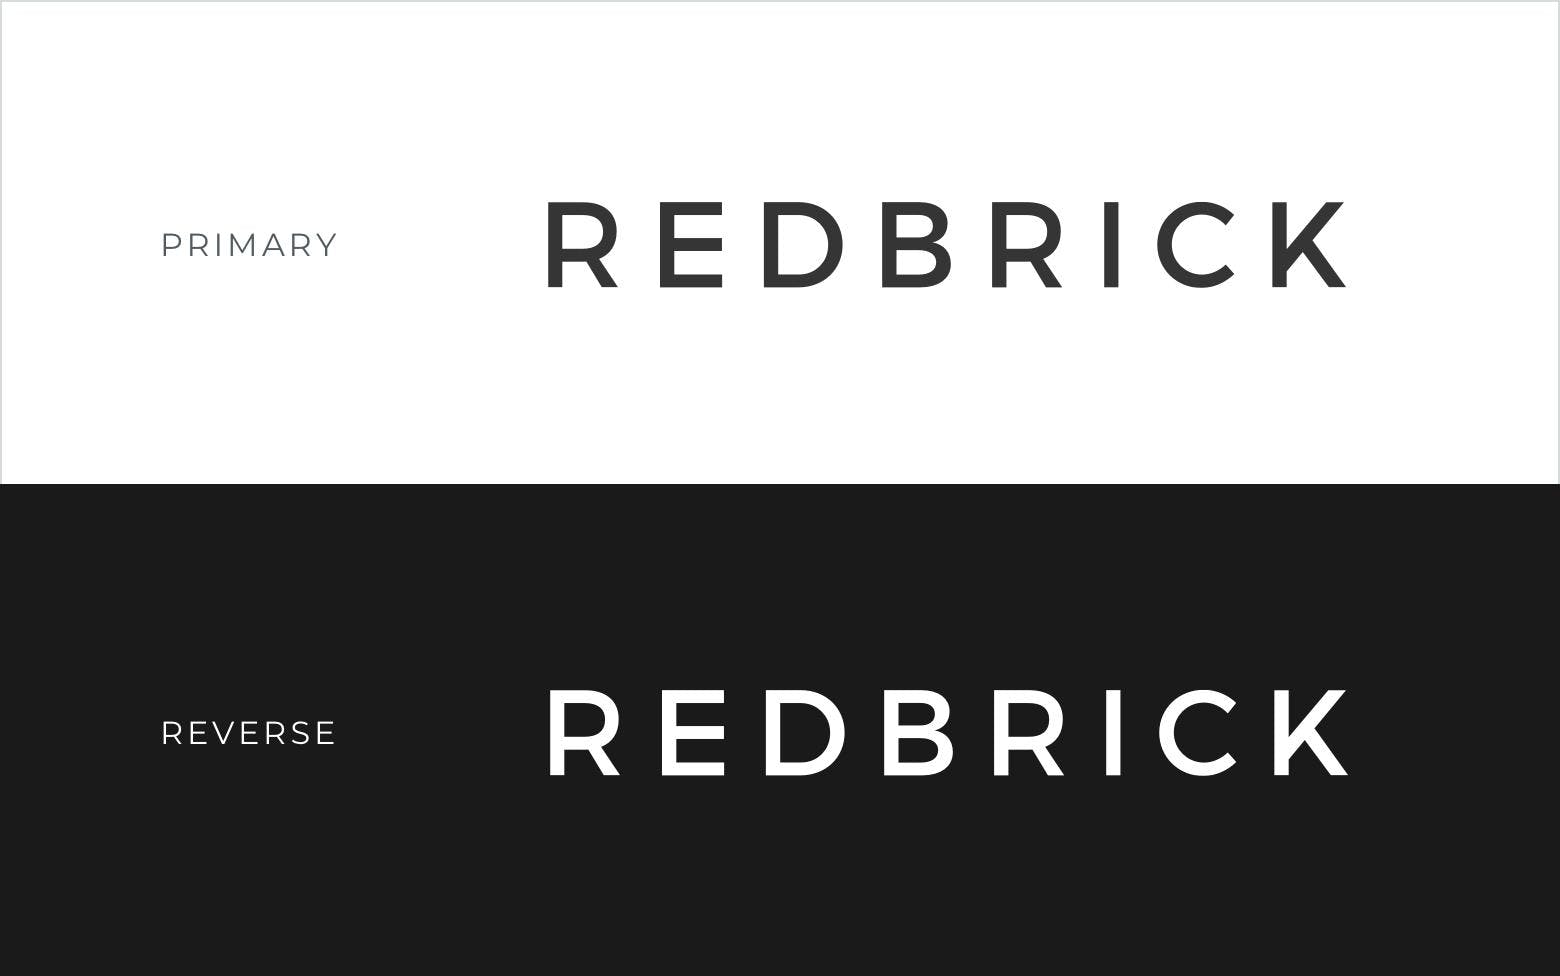 The new Redbrick brand.